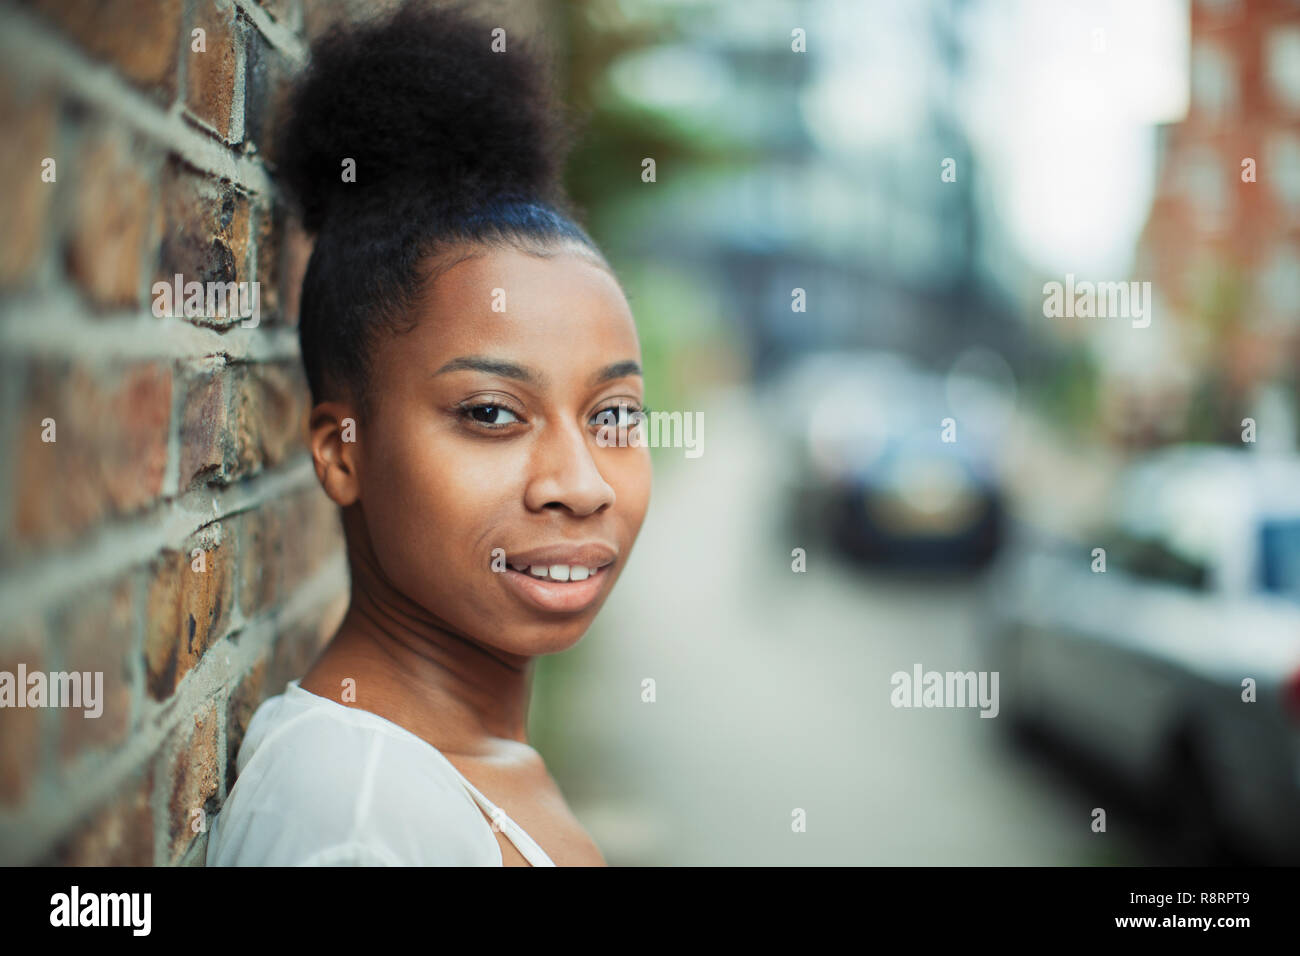 Portrait selbstbewussten jungen Frau auf städtischen Bürgersteig Stockfoto